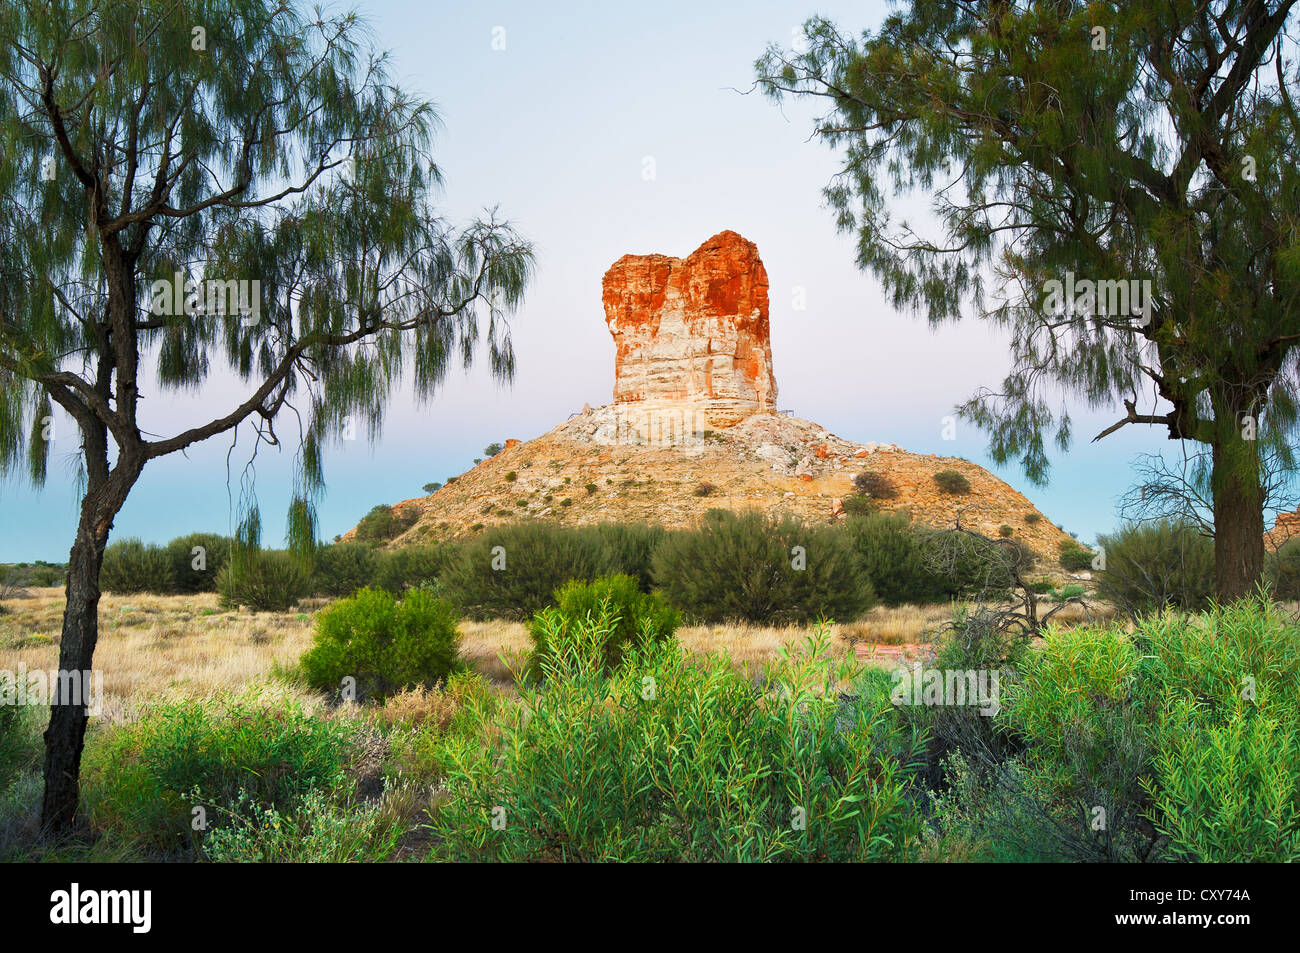 Camere pilastro incorniciata da due querce del deserto. Foto Stock